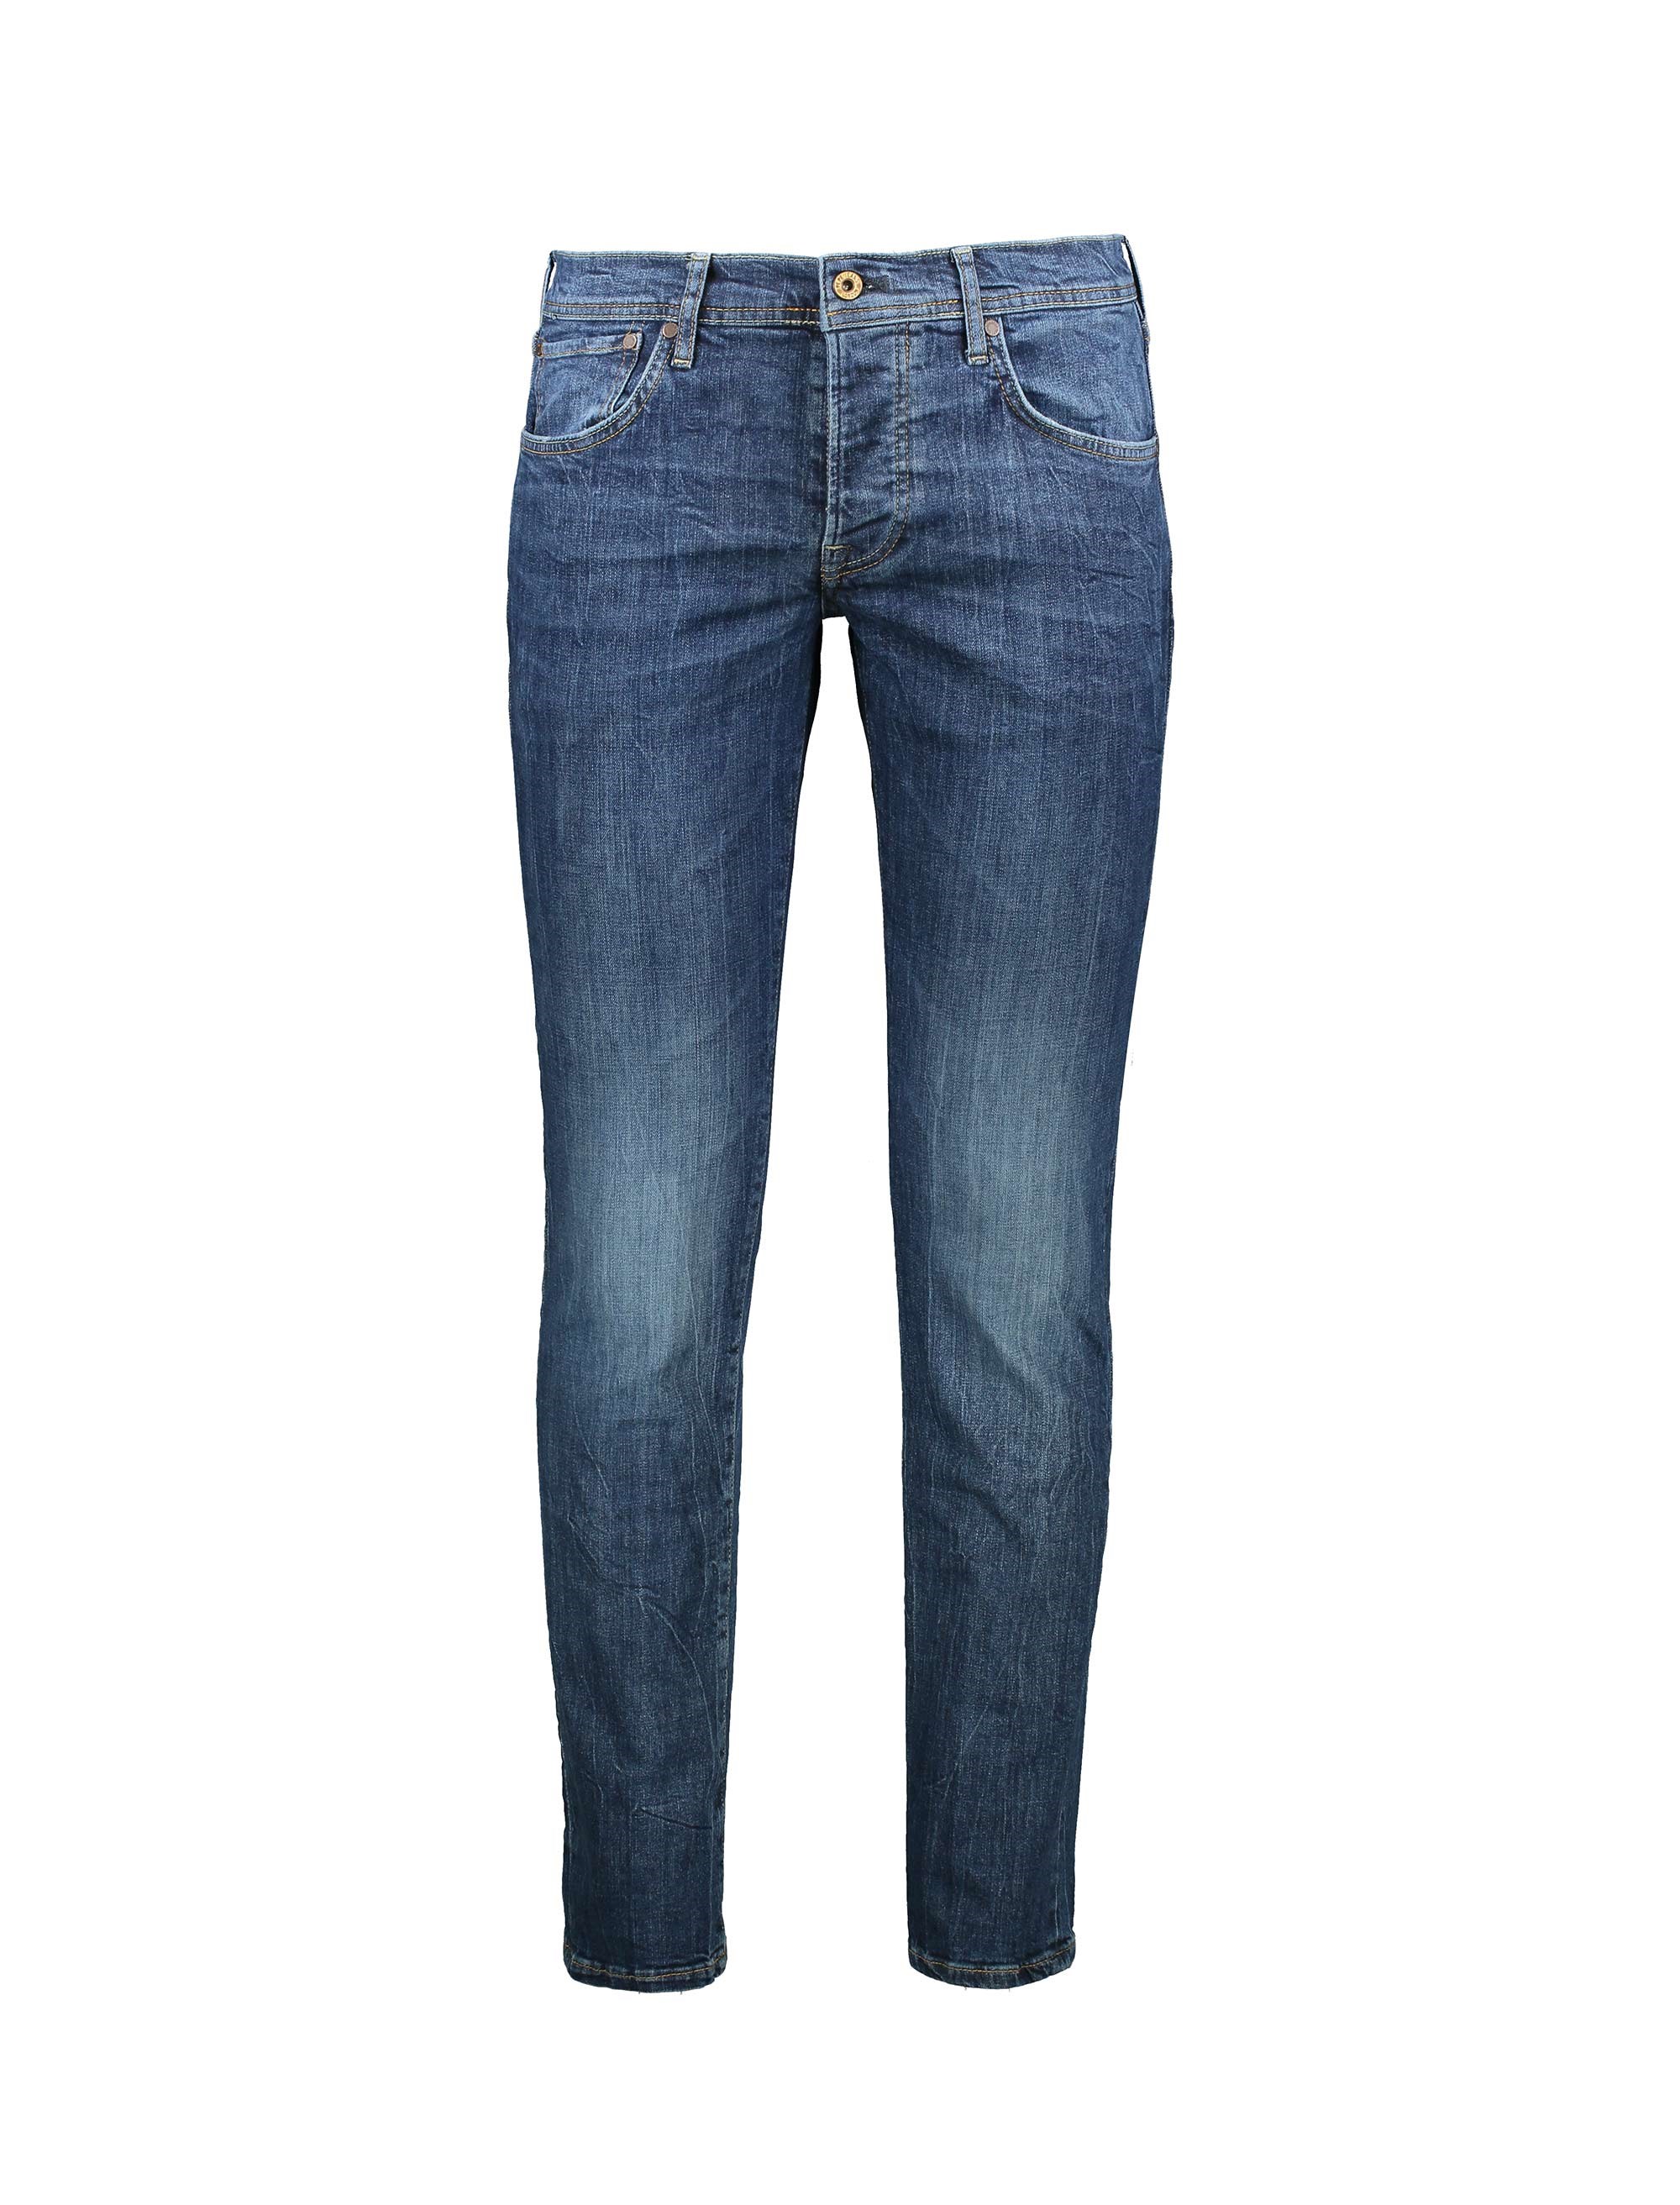 شلوار جین راسته مردانه - پپه جینز